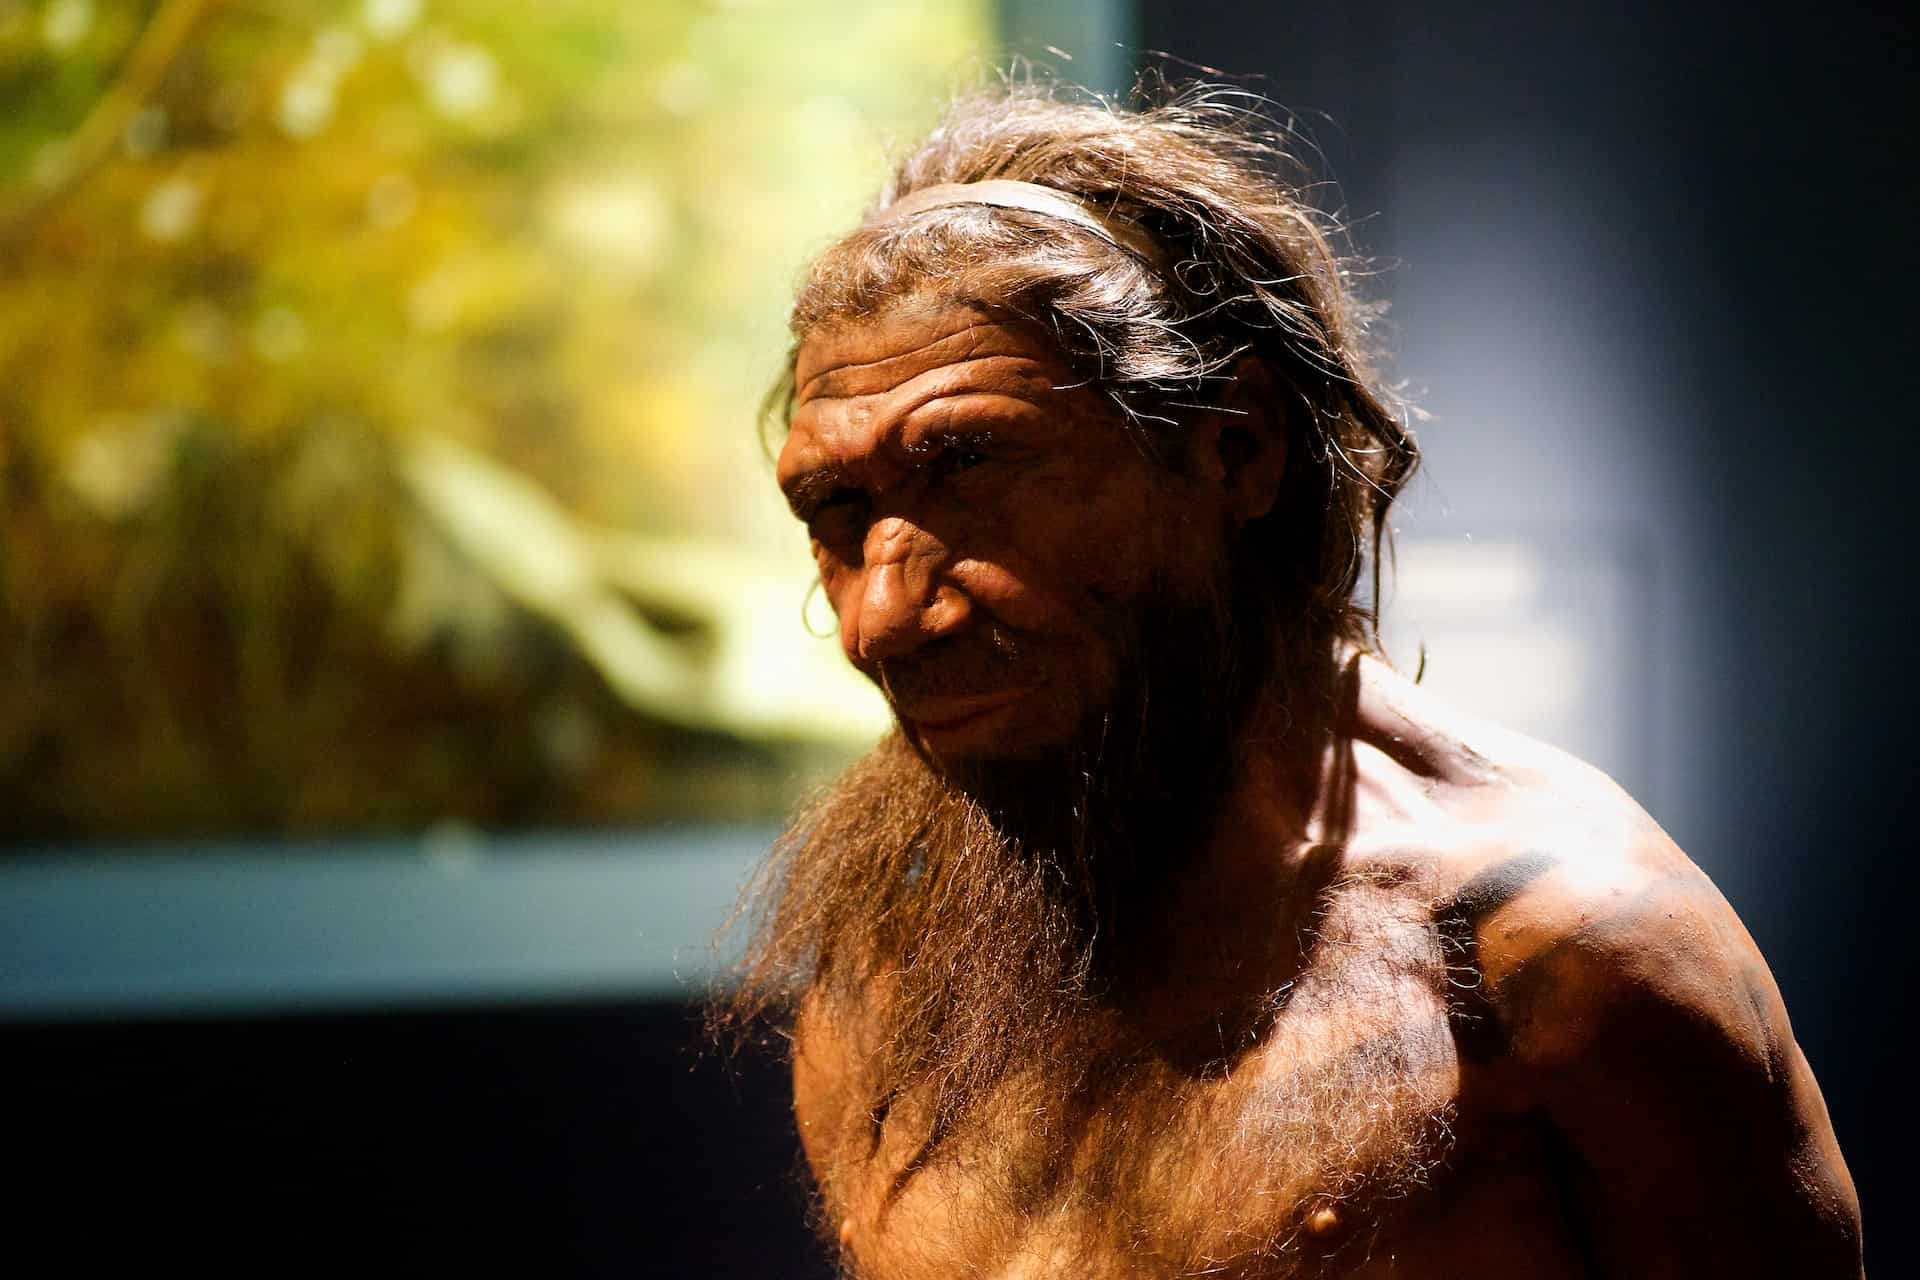 Museum rendering of a neanderthal.